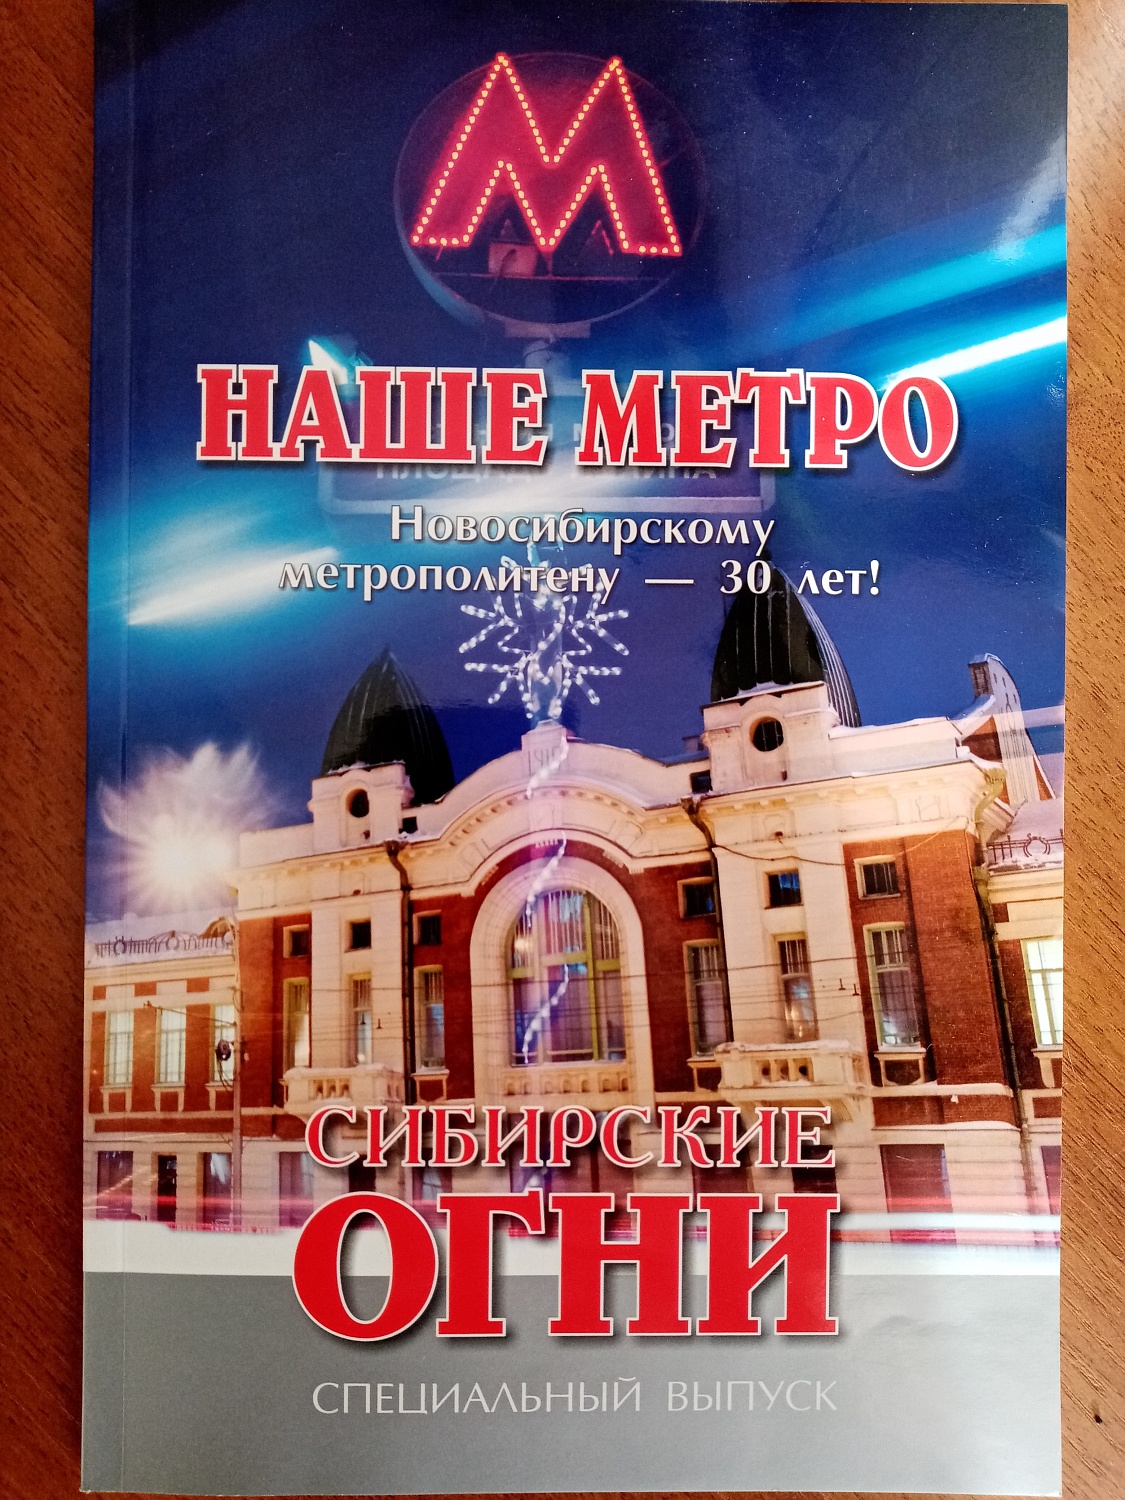 Специальный выпуск журнала Сибирские огни, посвященный 30-летию Новосибирского метрополитена.